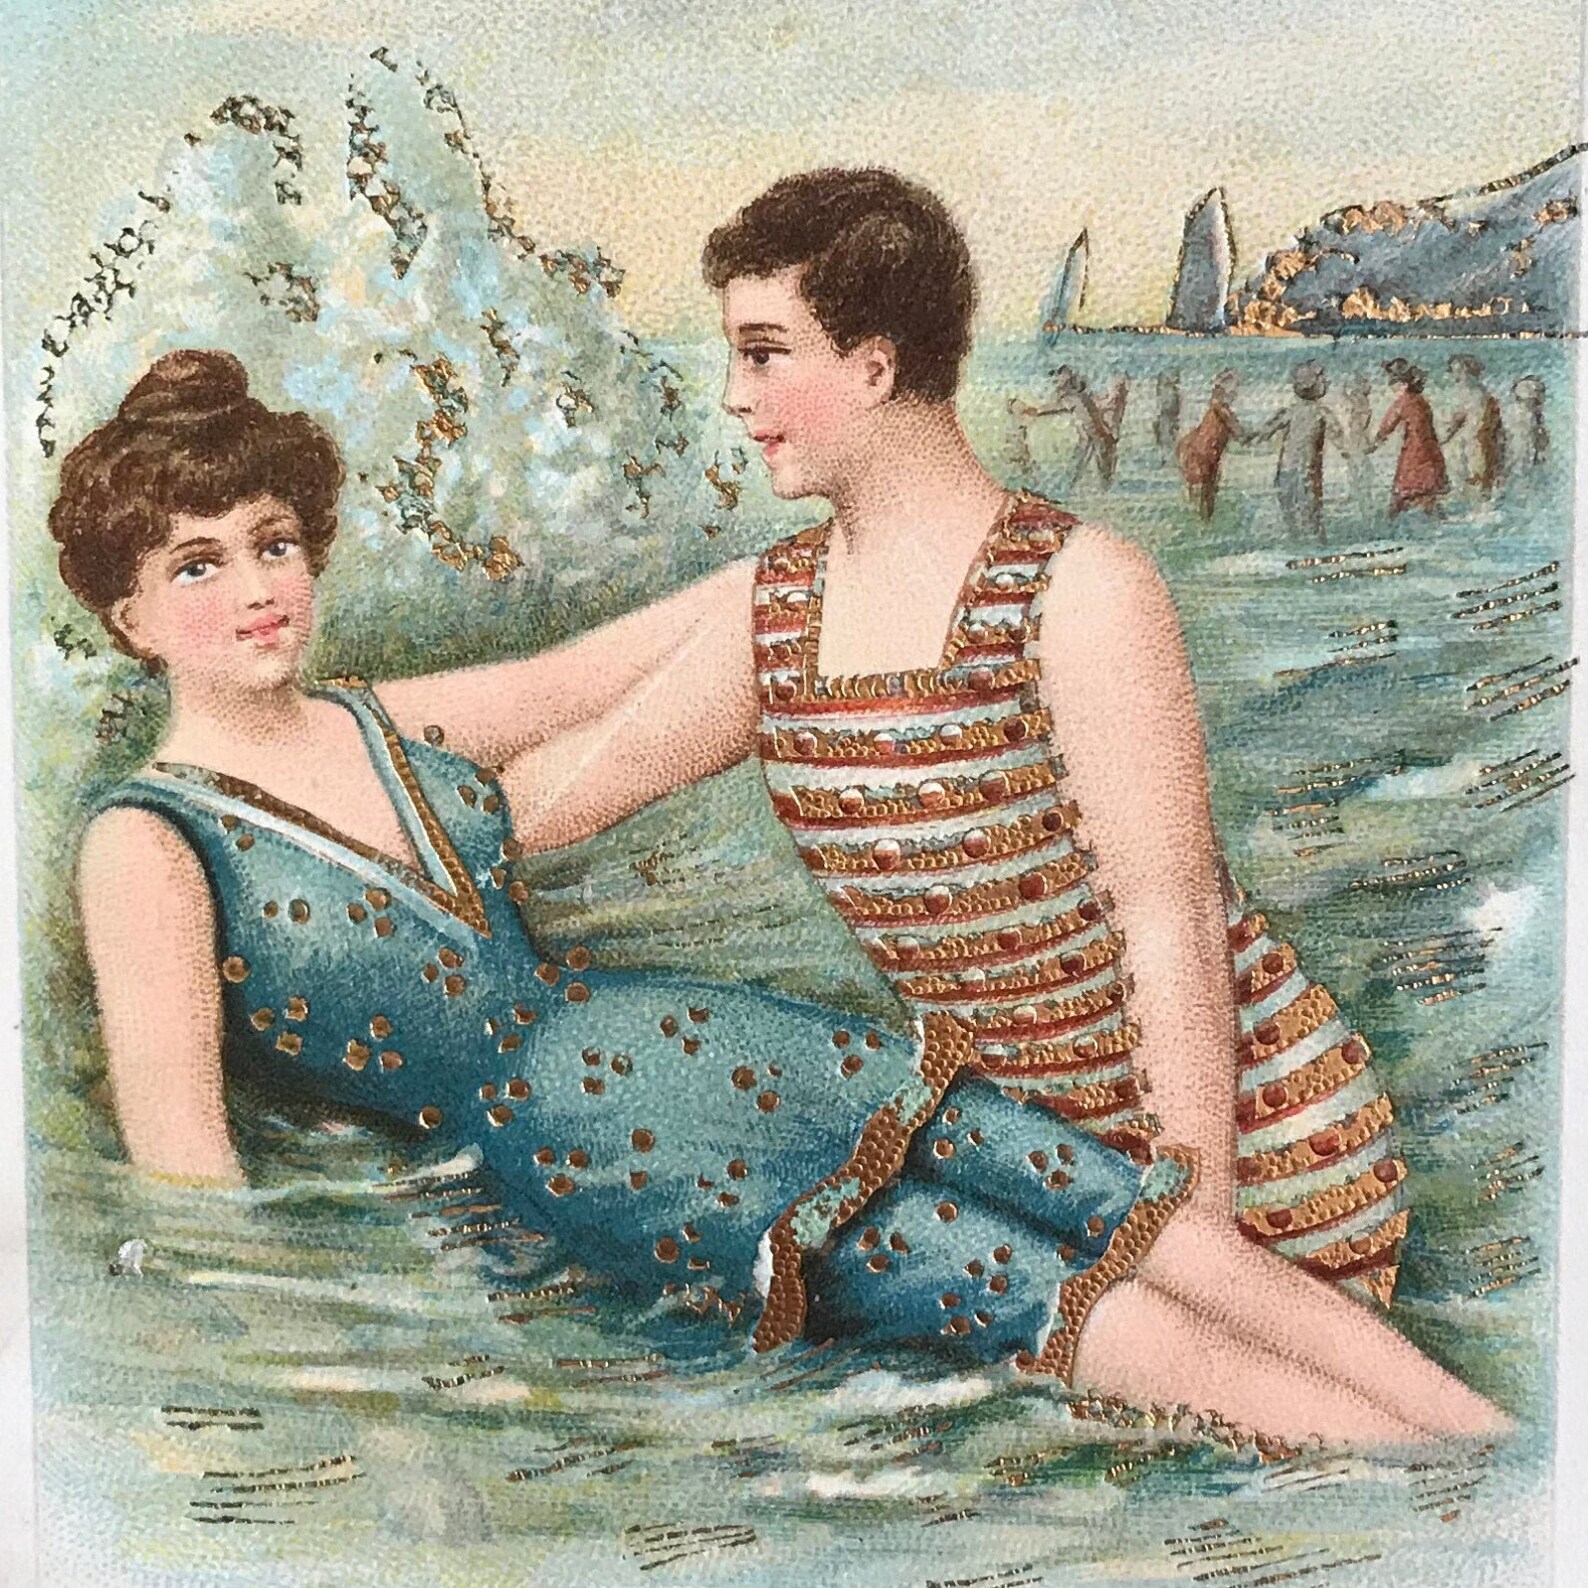 1912-Antique-Postcard-Edwardian-Swimming-Edwardian | Etsy